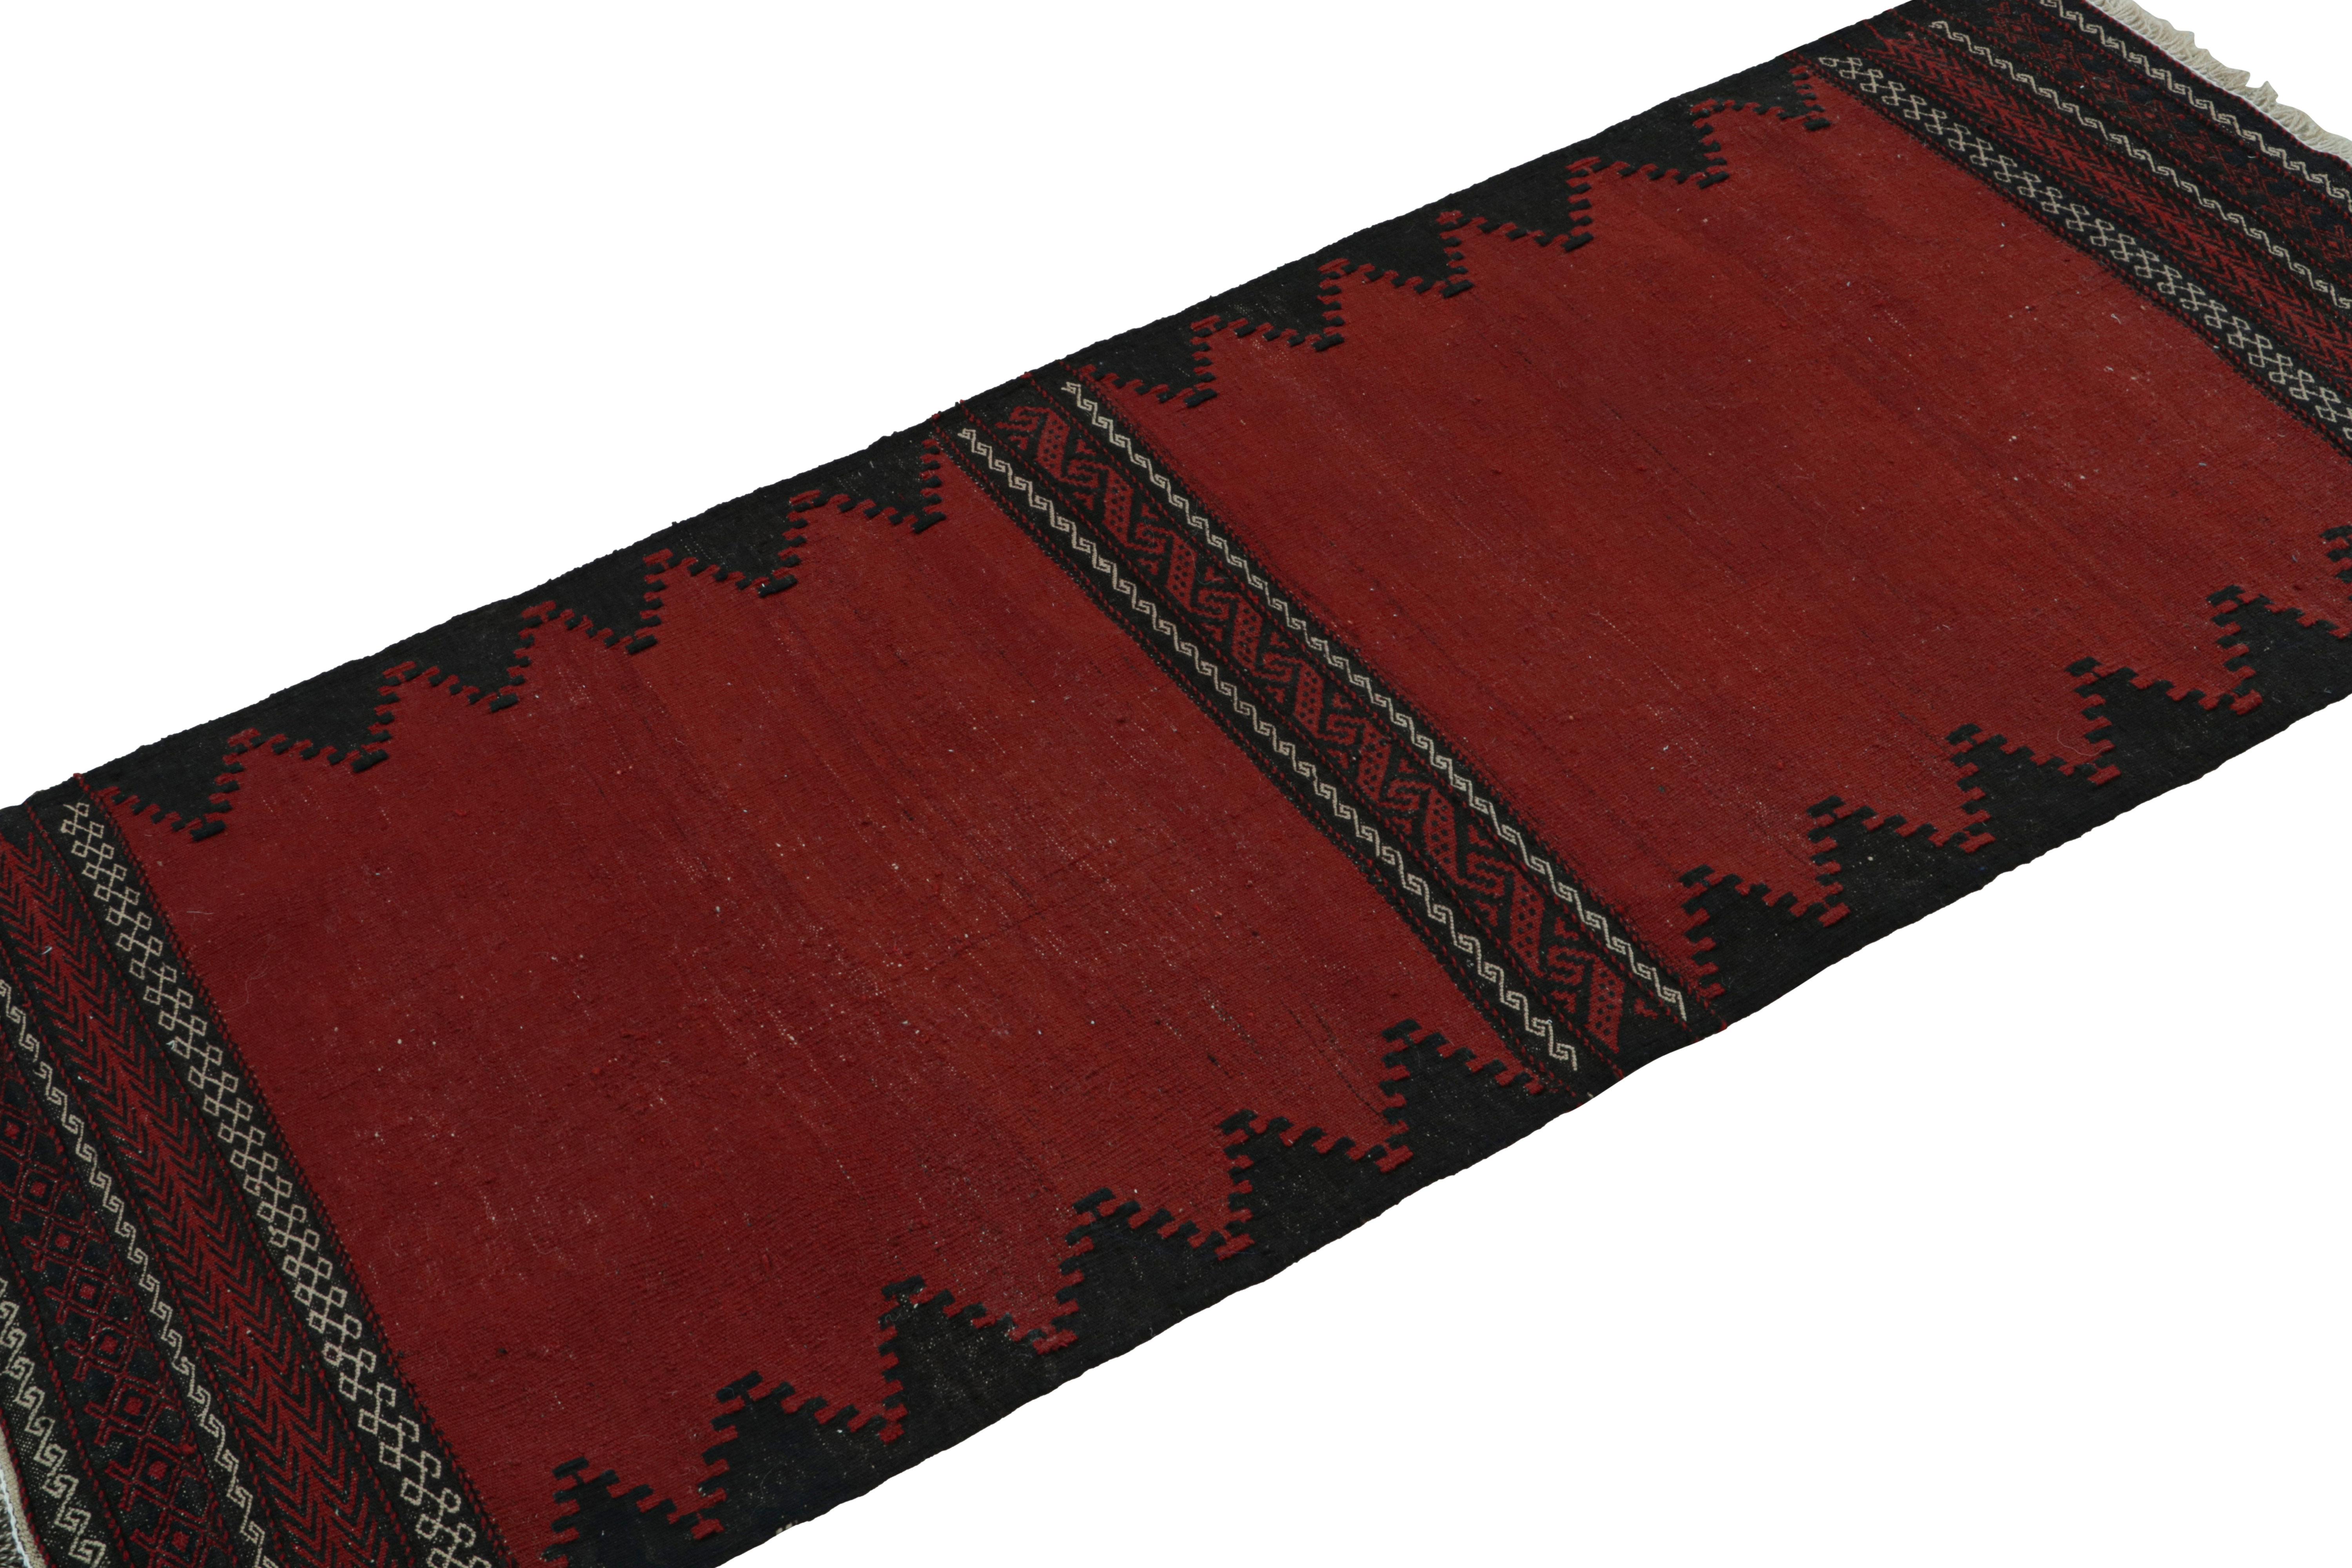 Dieser handgewebte afghanische 2x5-Stammeskelim aus der Zeit um 1950-1960 ist eine exquisite Ergänzung der Rug & Kilim-Kollektion mit Stammesmotiven.  

Über das Design: 

Dieses archaische Kunstwerk mit althergebrachtem Charme, das auf afghanische